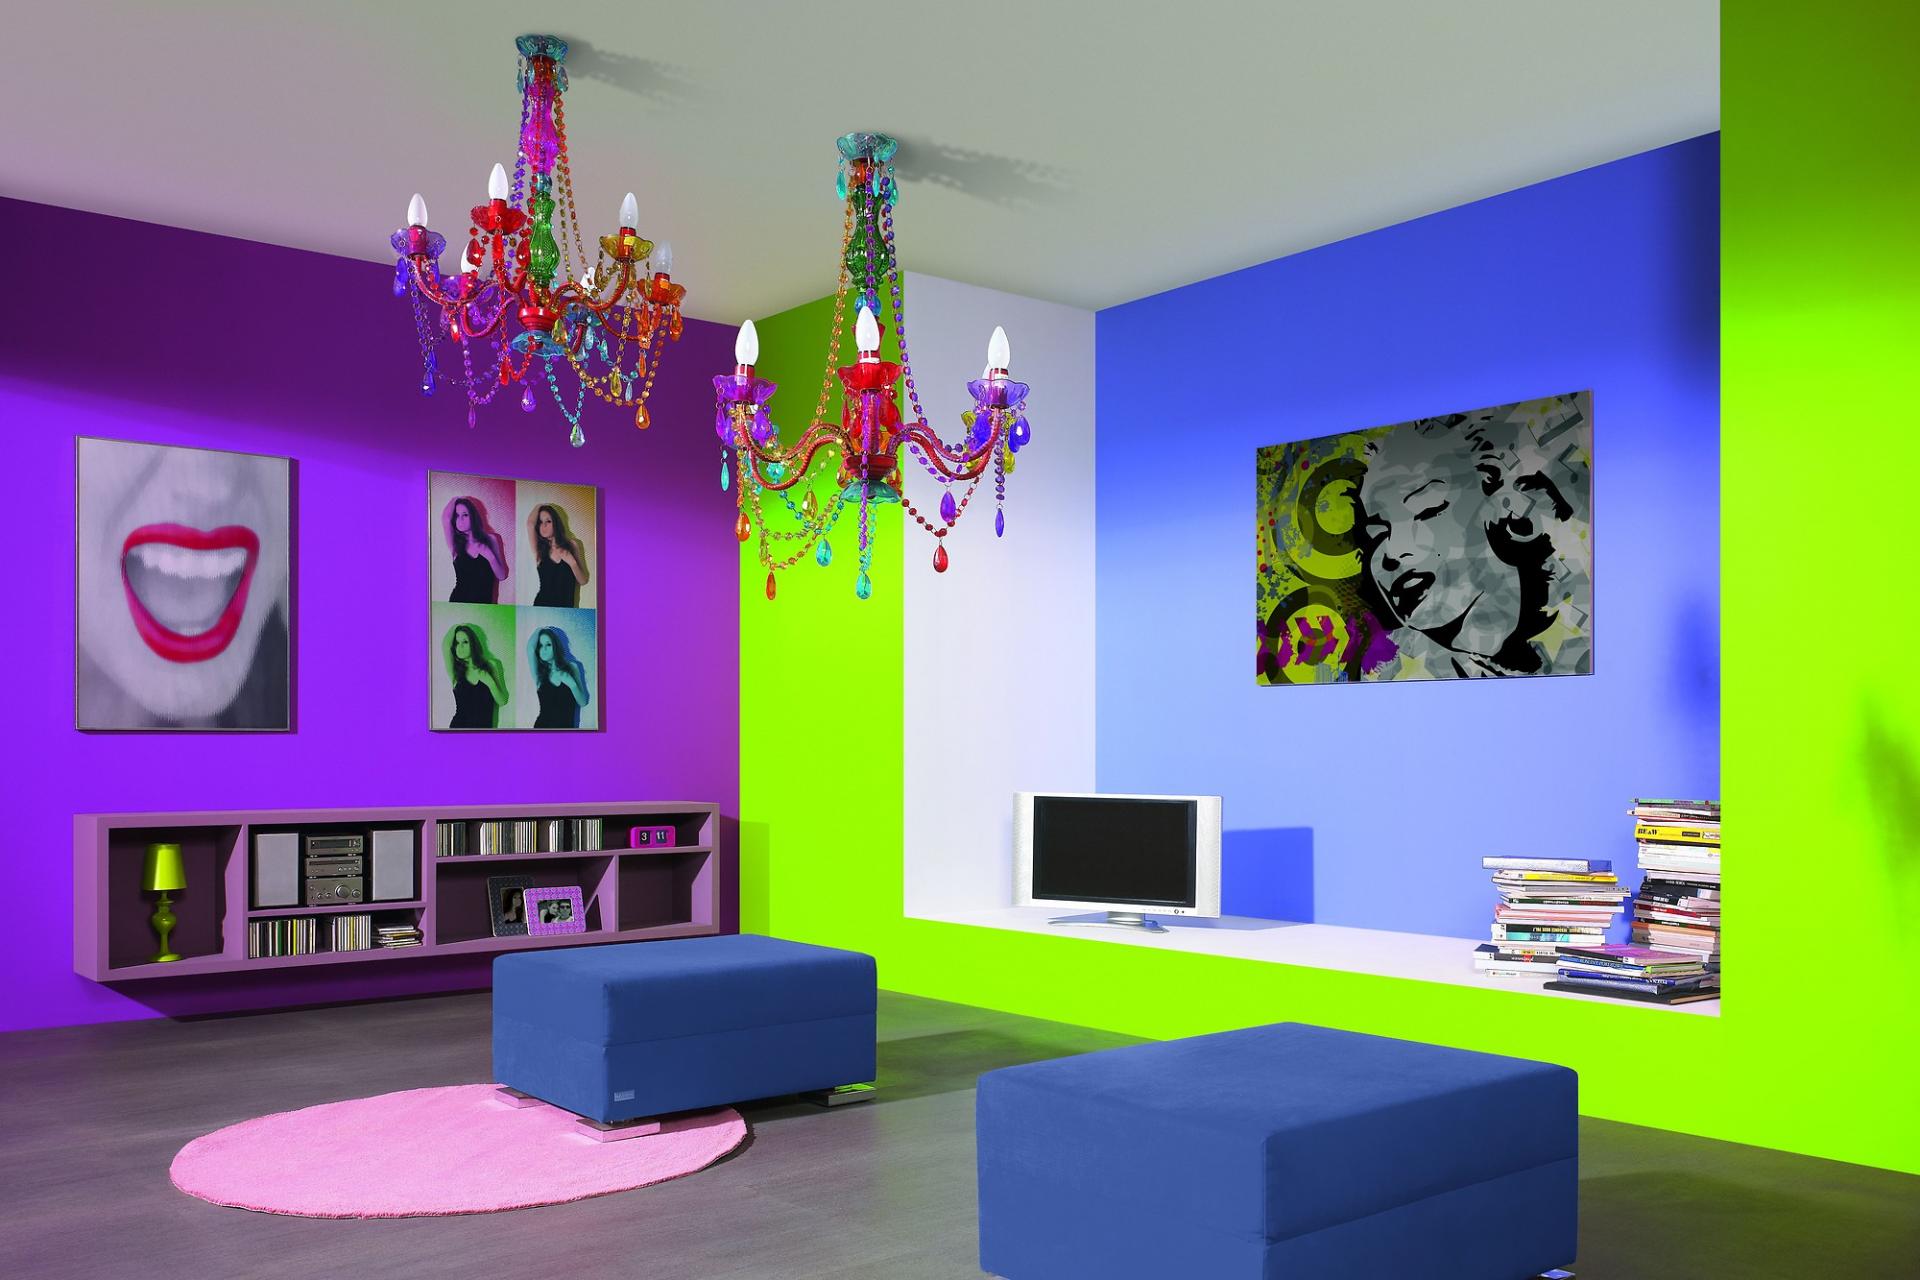 Un exemple d'appartement lumineux dans un style pop art